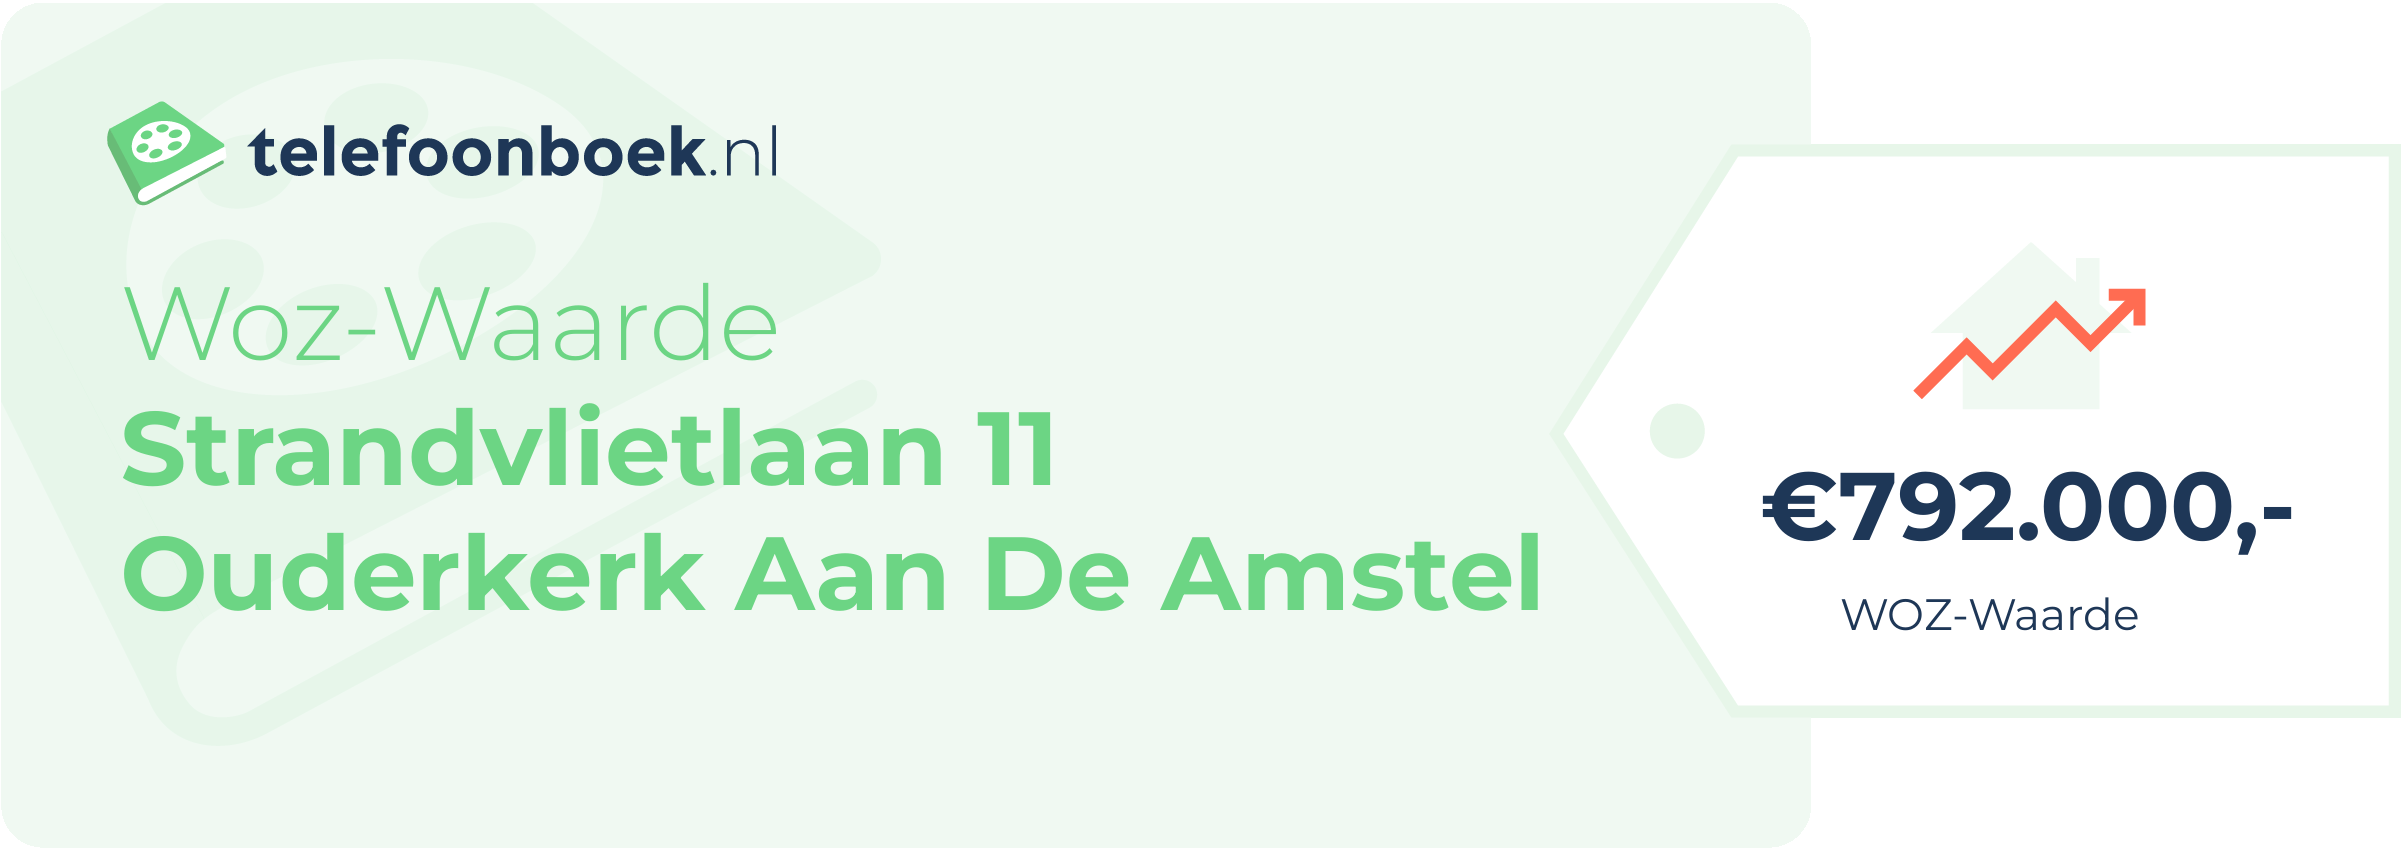 WOZ-waarde Strandvlietlaan 11 Ouderkerk Aan De Amstel